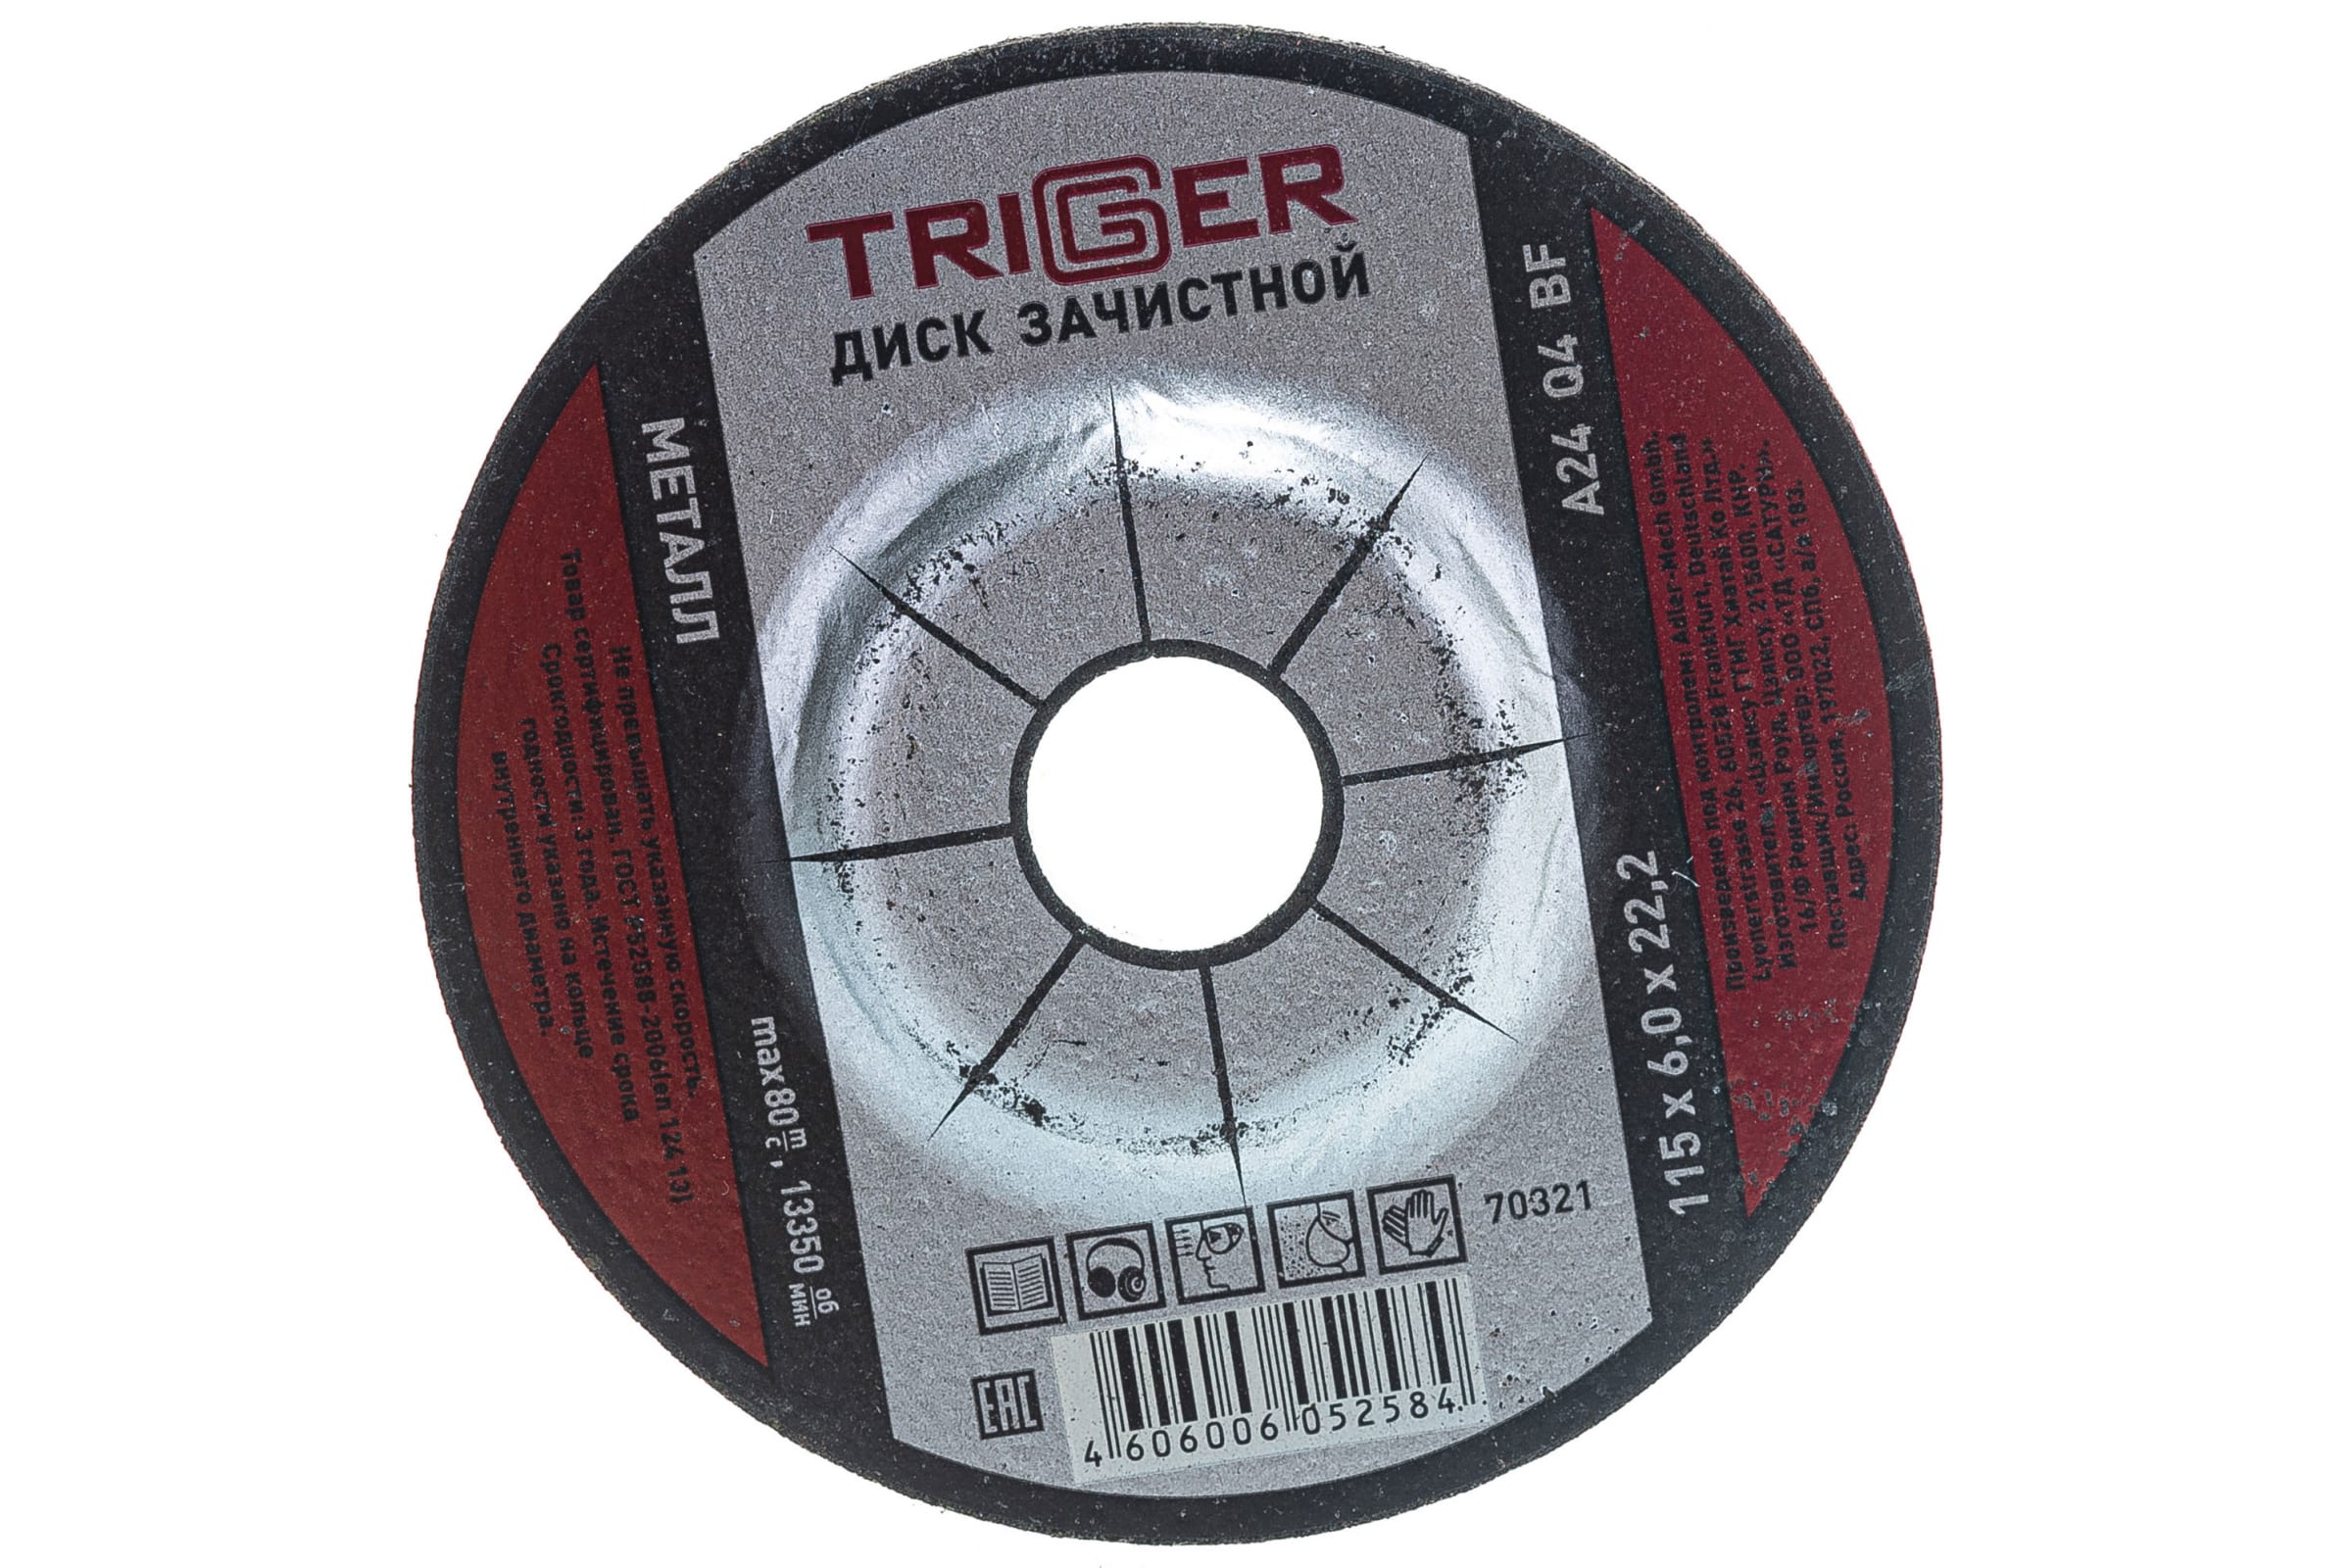 фото Триггер диск зачистной по металлу 115x6x22.2мм 7032 тов-157537 trigger